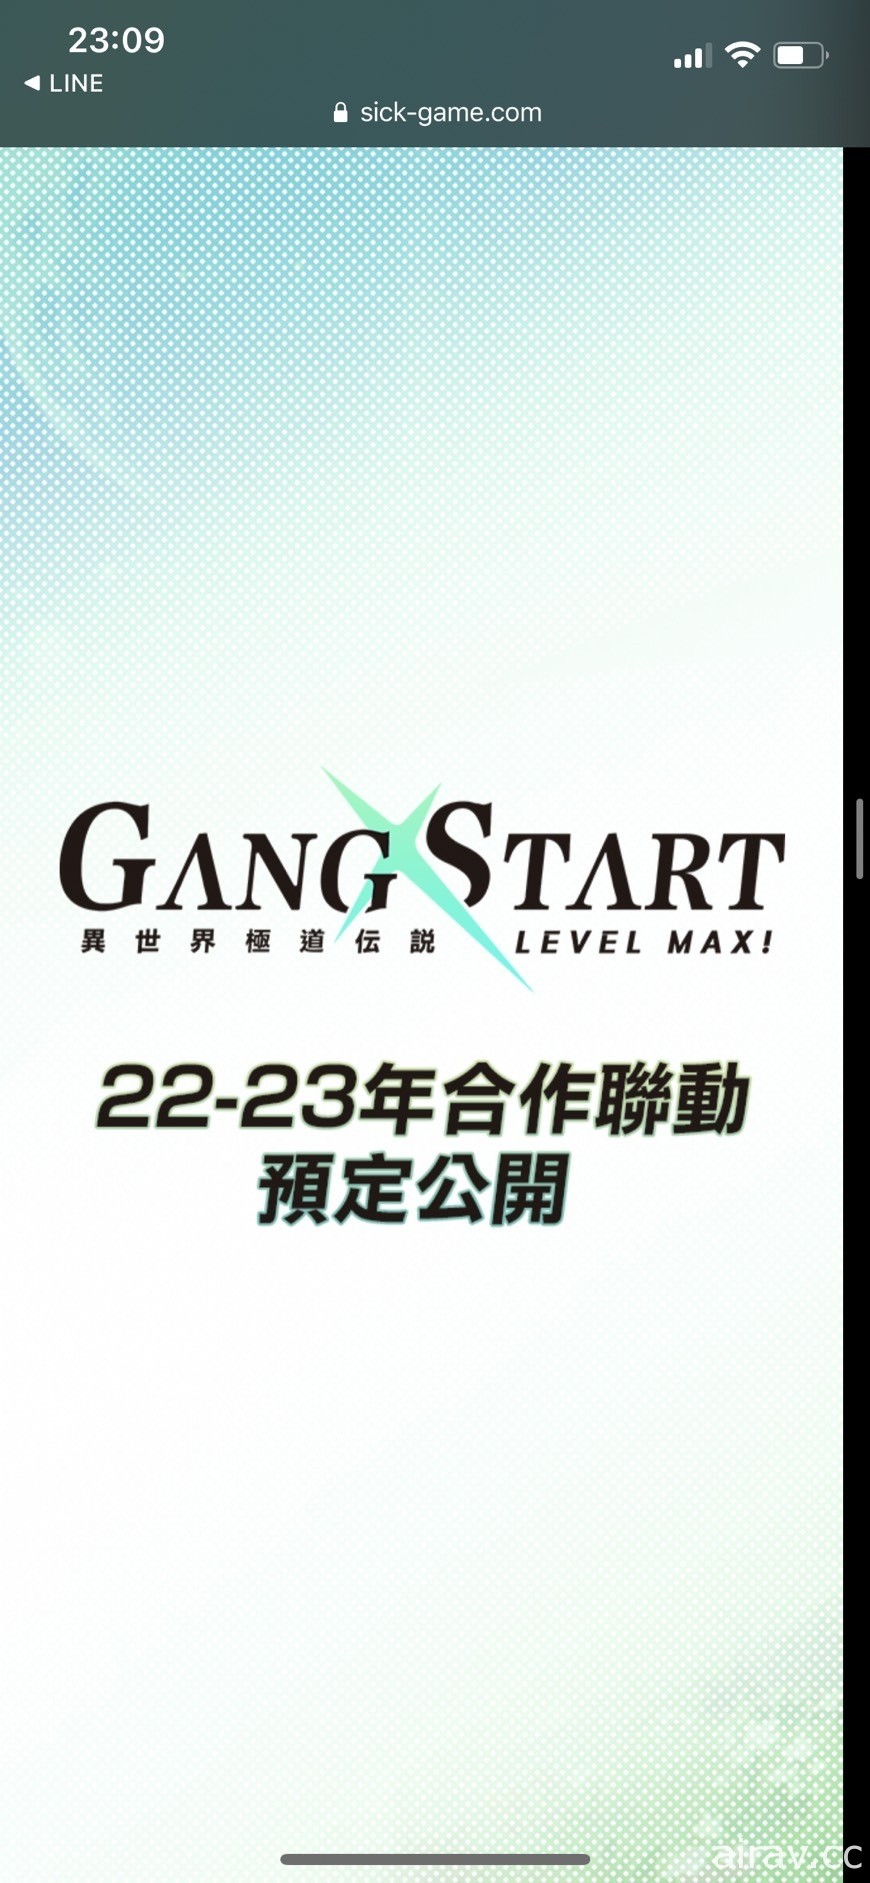 「有病制作」最新力作《Gang Start：異世界極道傳說》曝光 預計 2022 年初夏上線